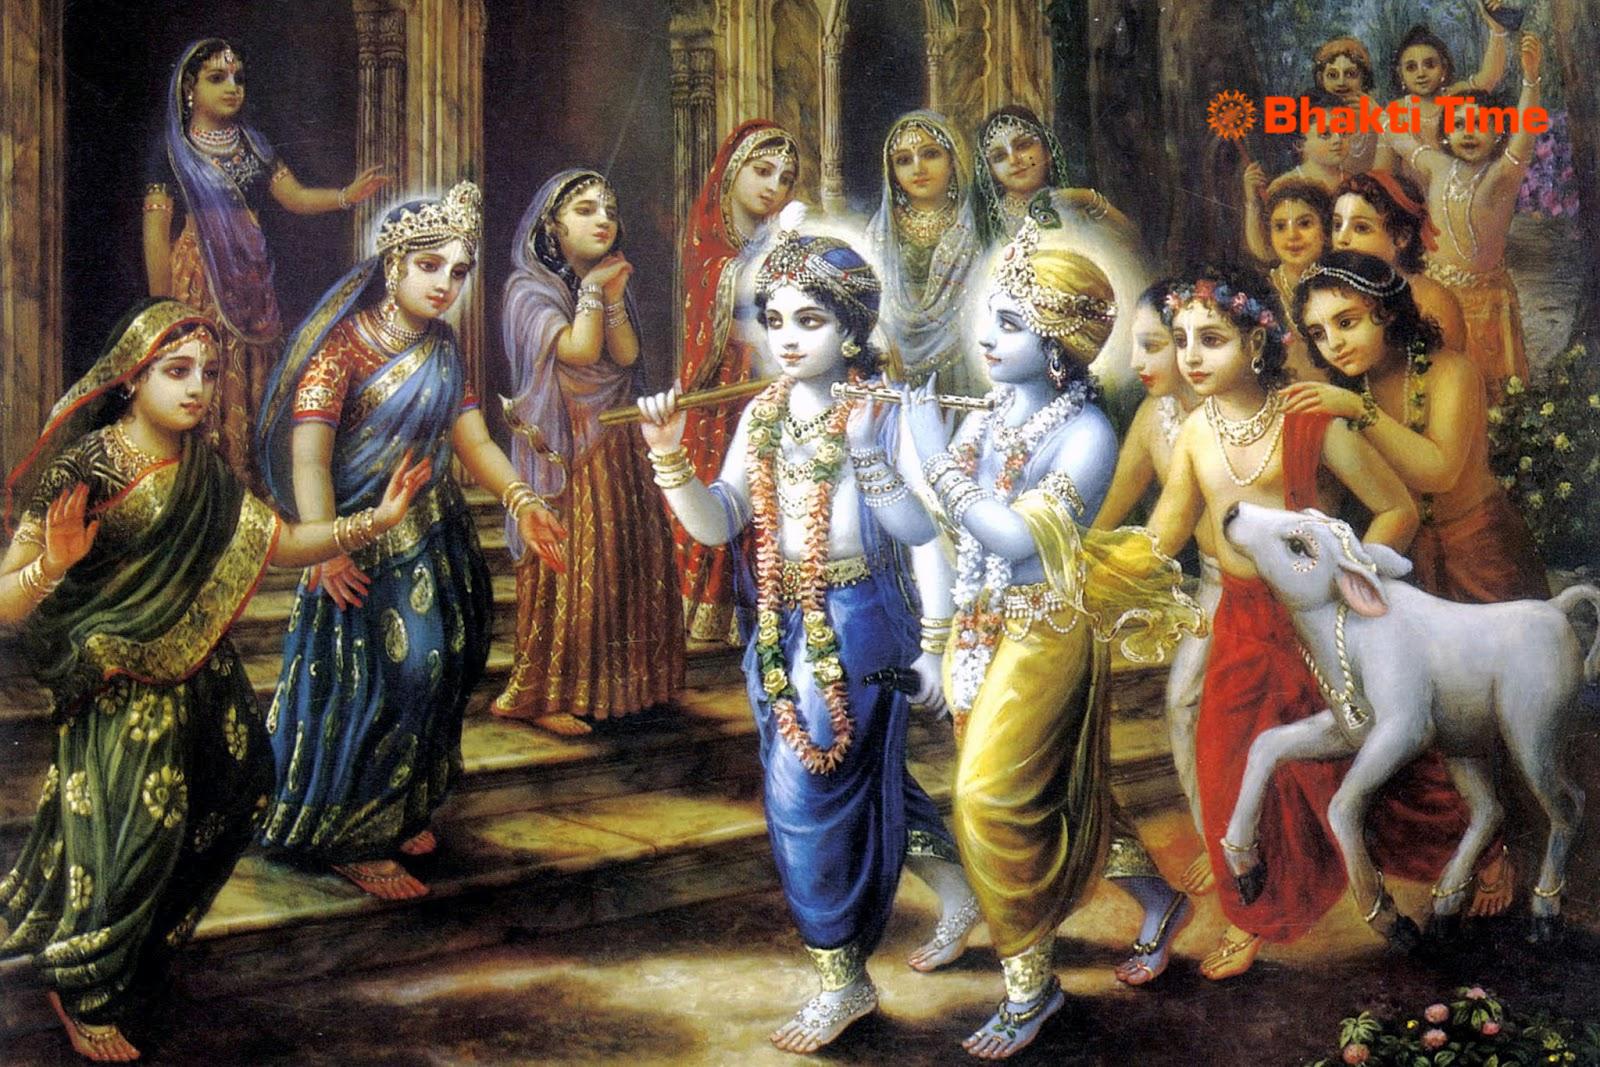 Krishna Bal Leela - Beautiful Bal Krishna Painting - 1600x1067 Wallpaper -  